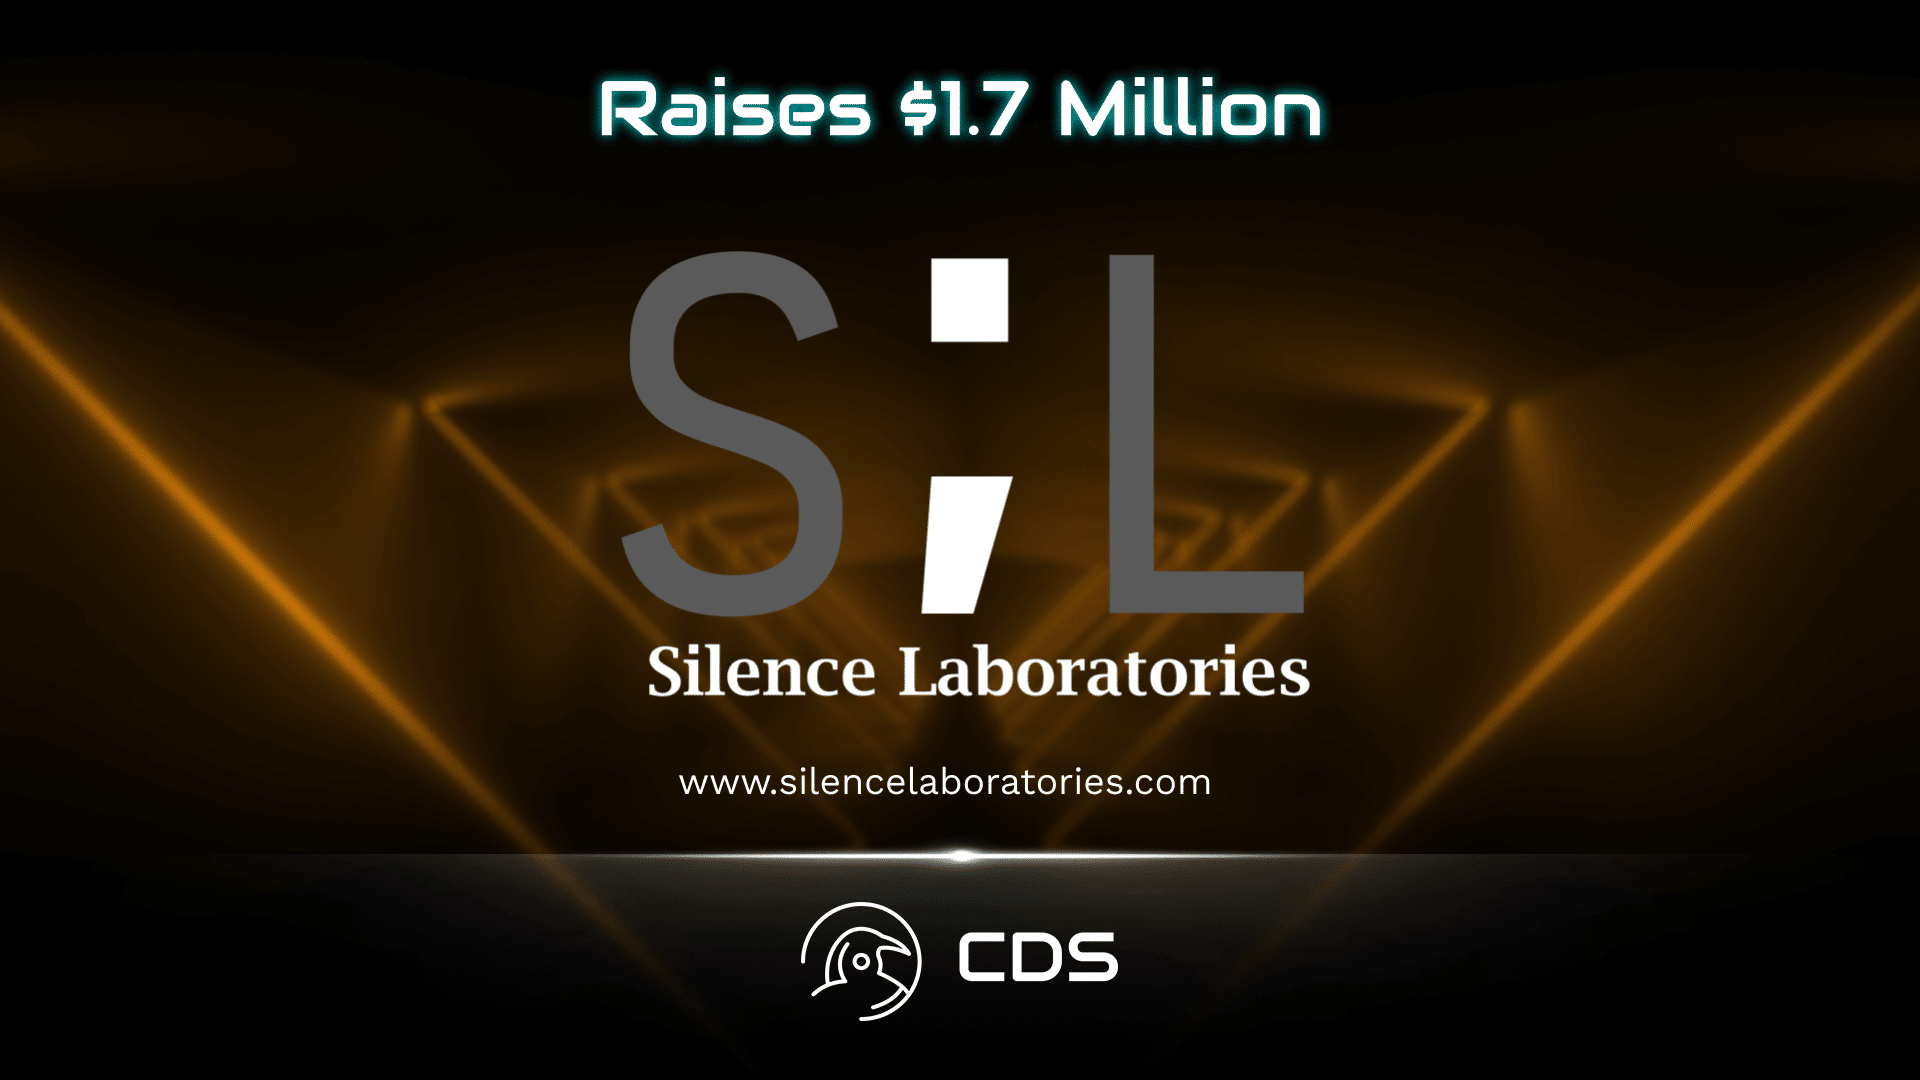 Silence Laboratories Raises $1.7 Million